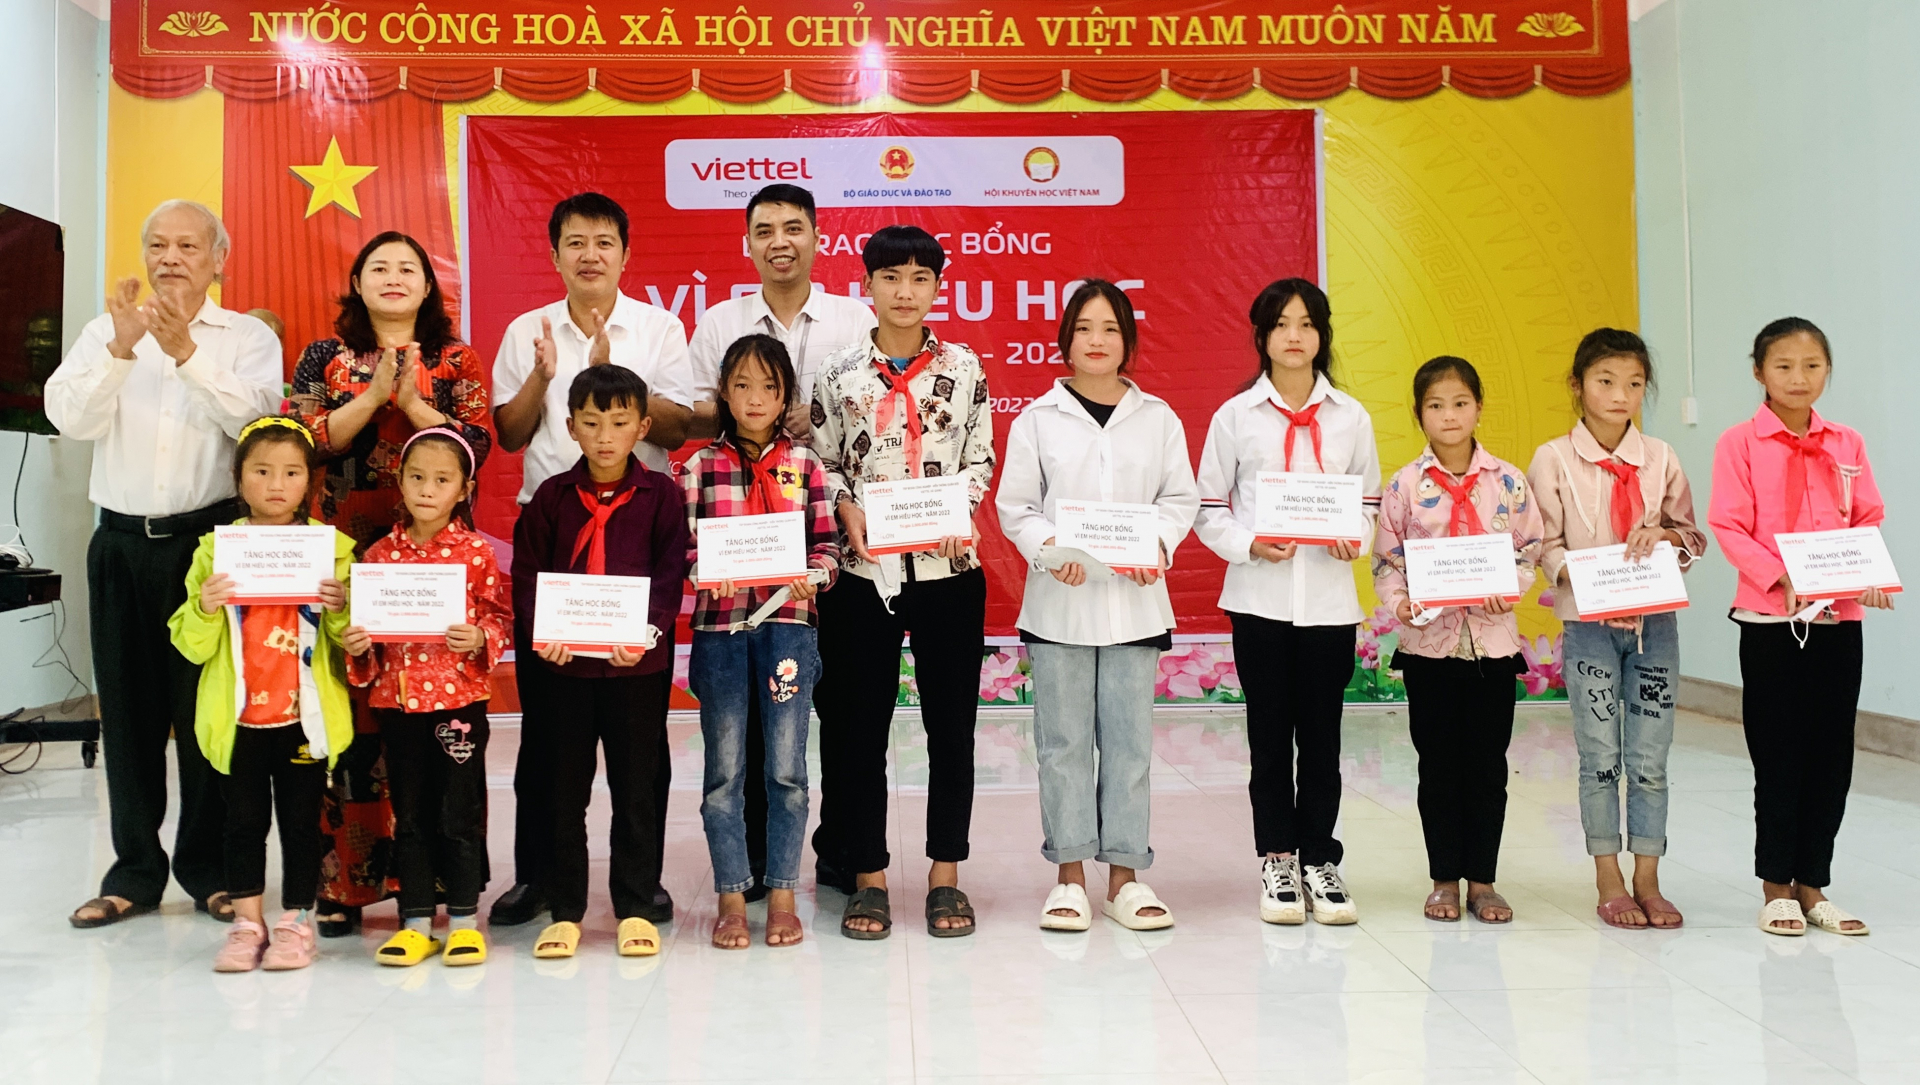 Đại diện các đơn vị trao học bổng cho học sinh có thành tích học tập tốt trên địa bàn huyện Vị Xuyên.
